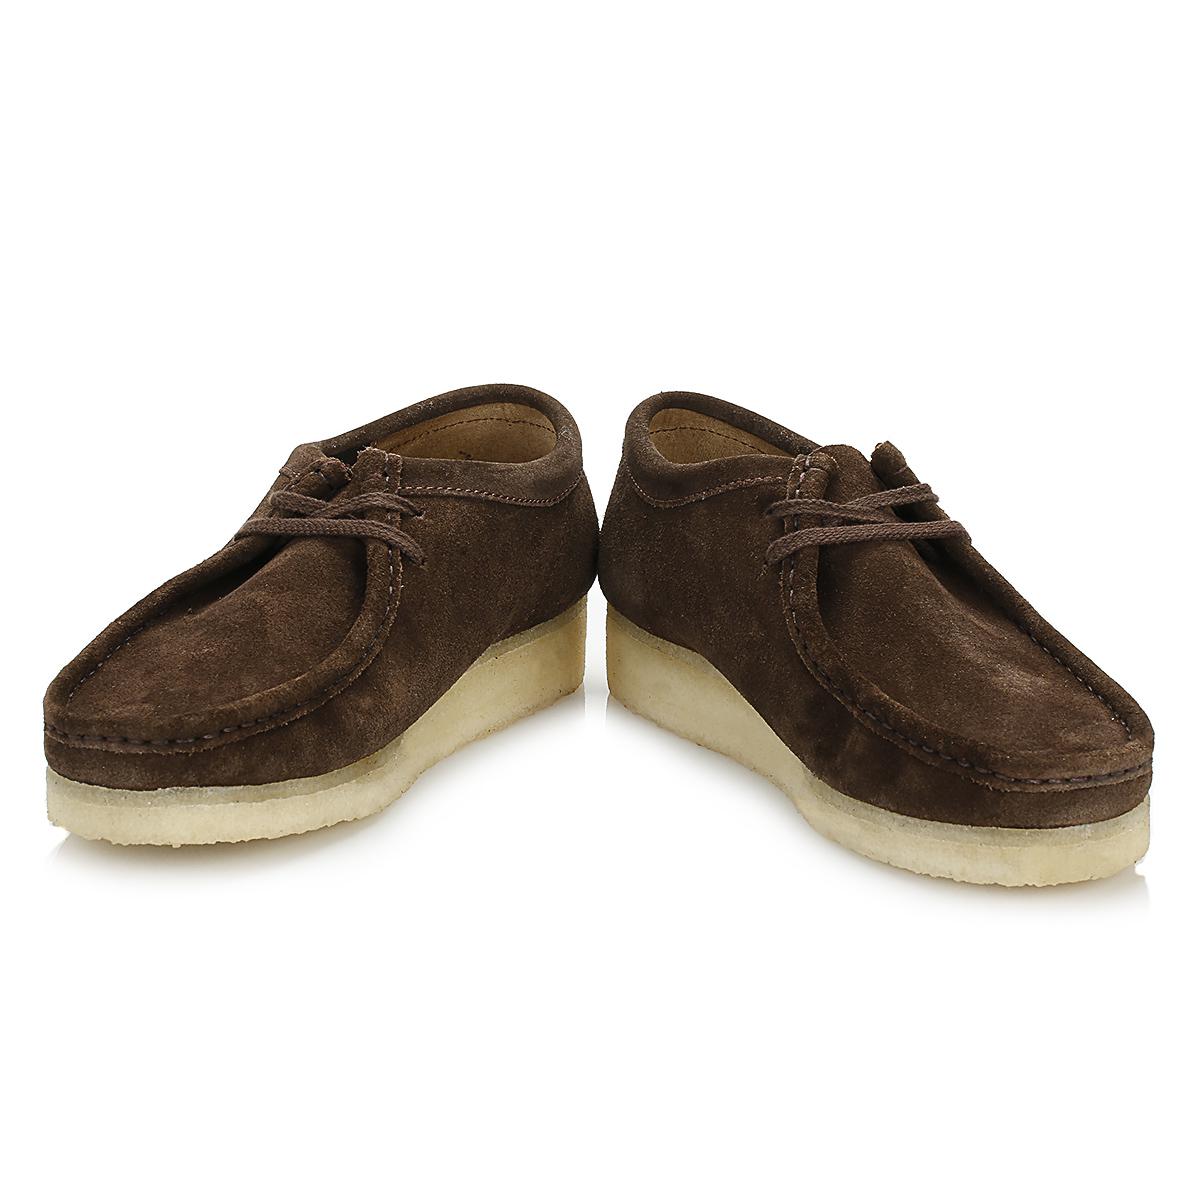 Clarks Originals Mens Dark Brown Wallabee Suede Shoes for